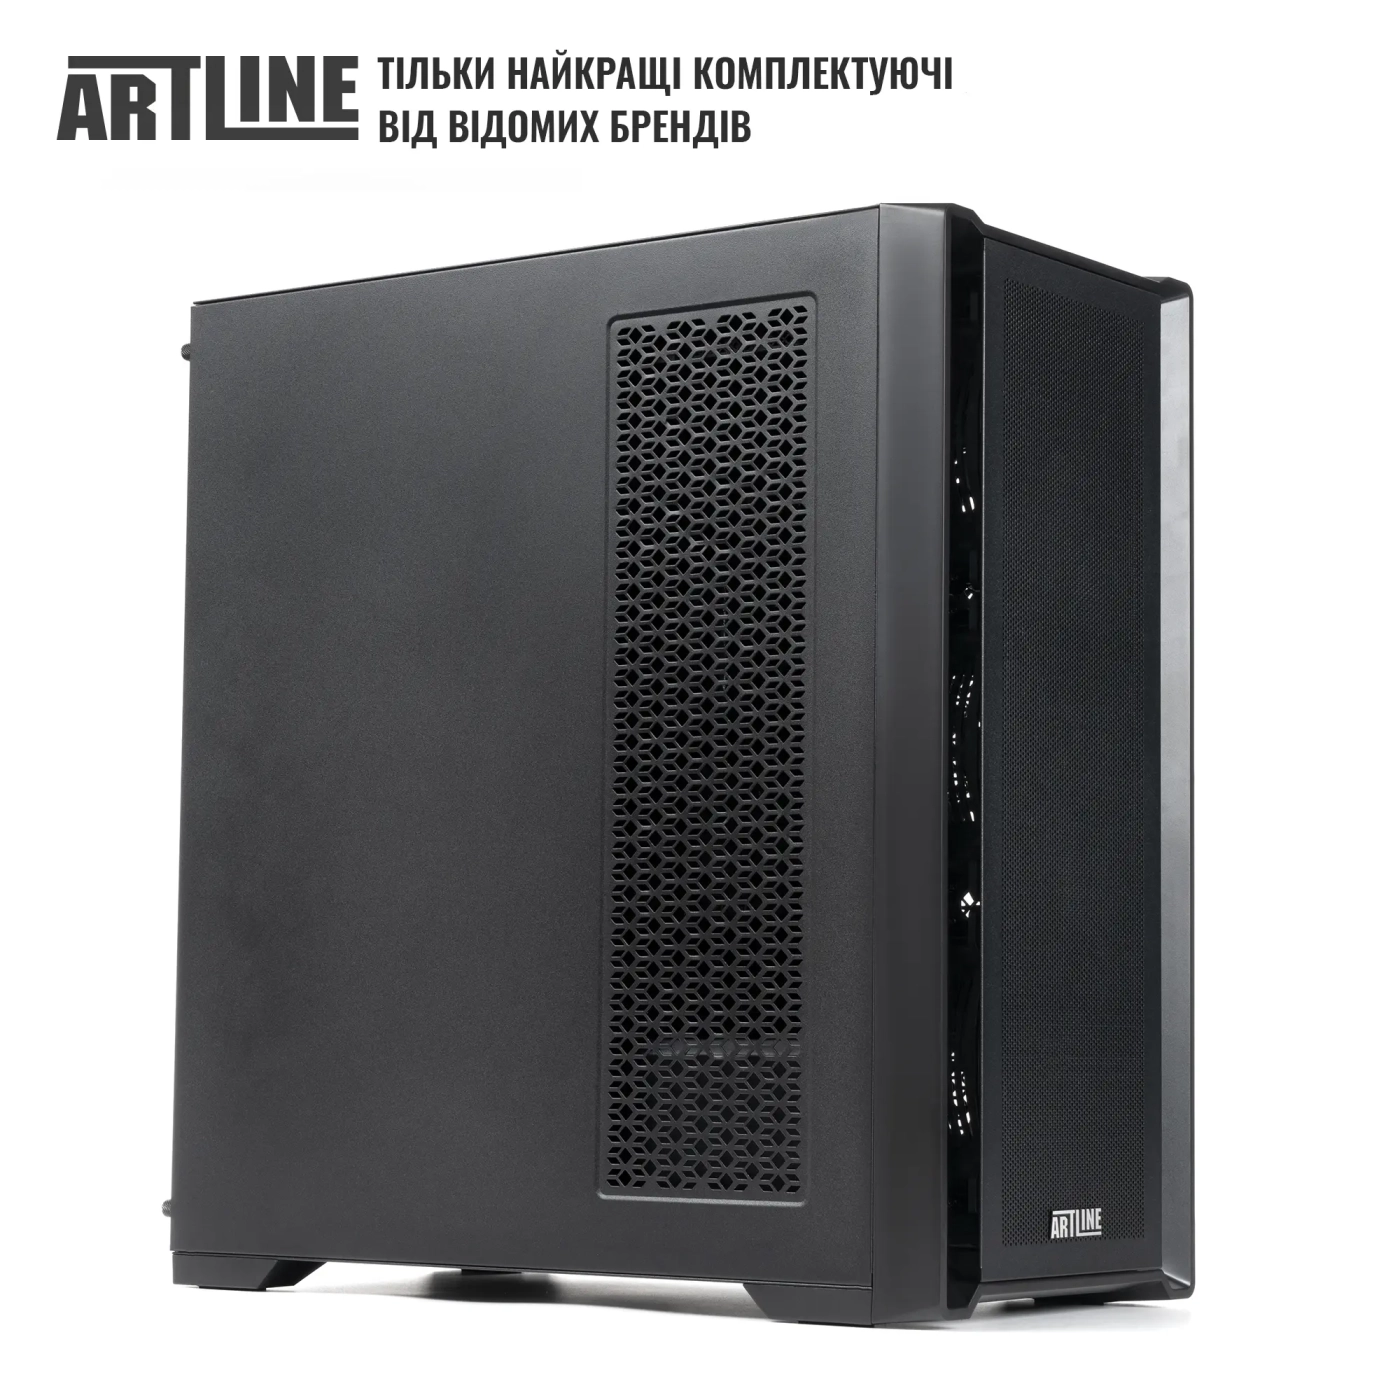 Купить Сервер ARTLINE Business T81 (T81v16) - фото 6